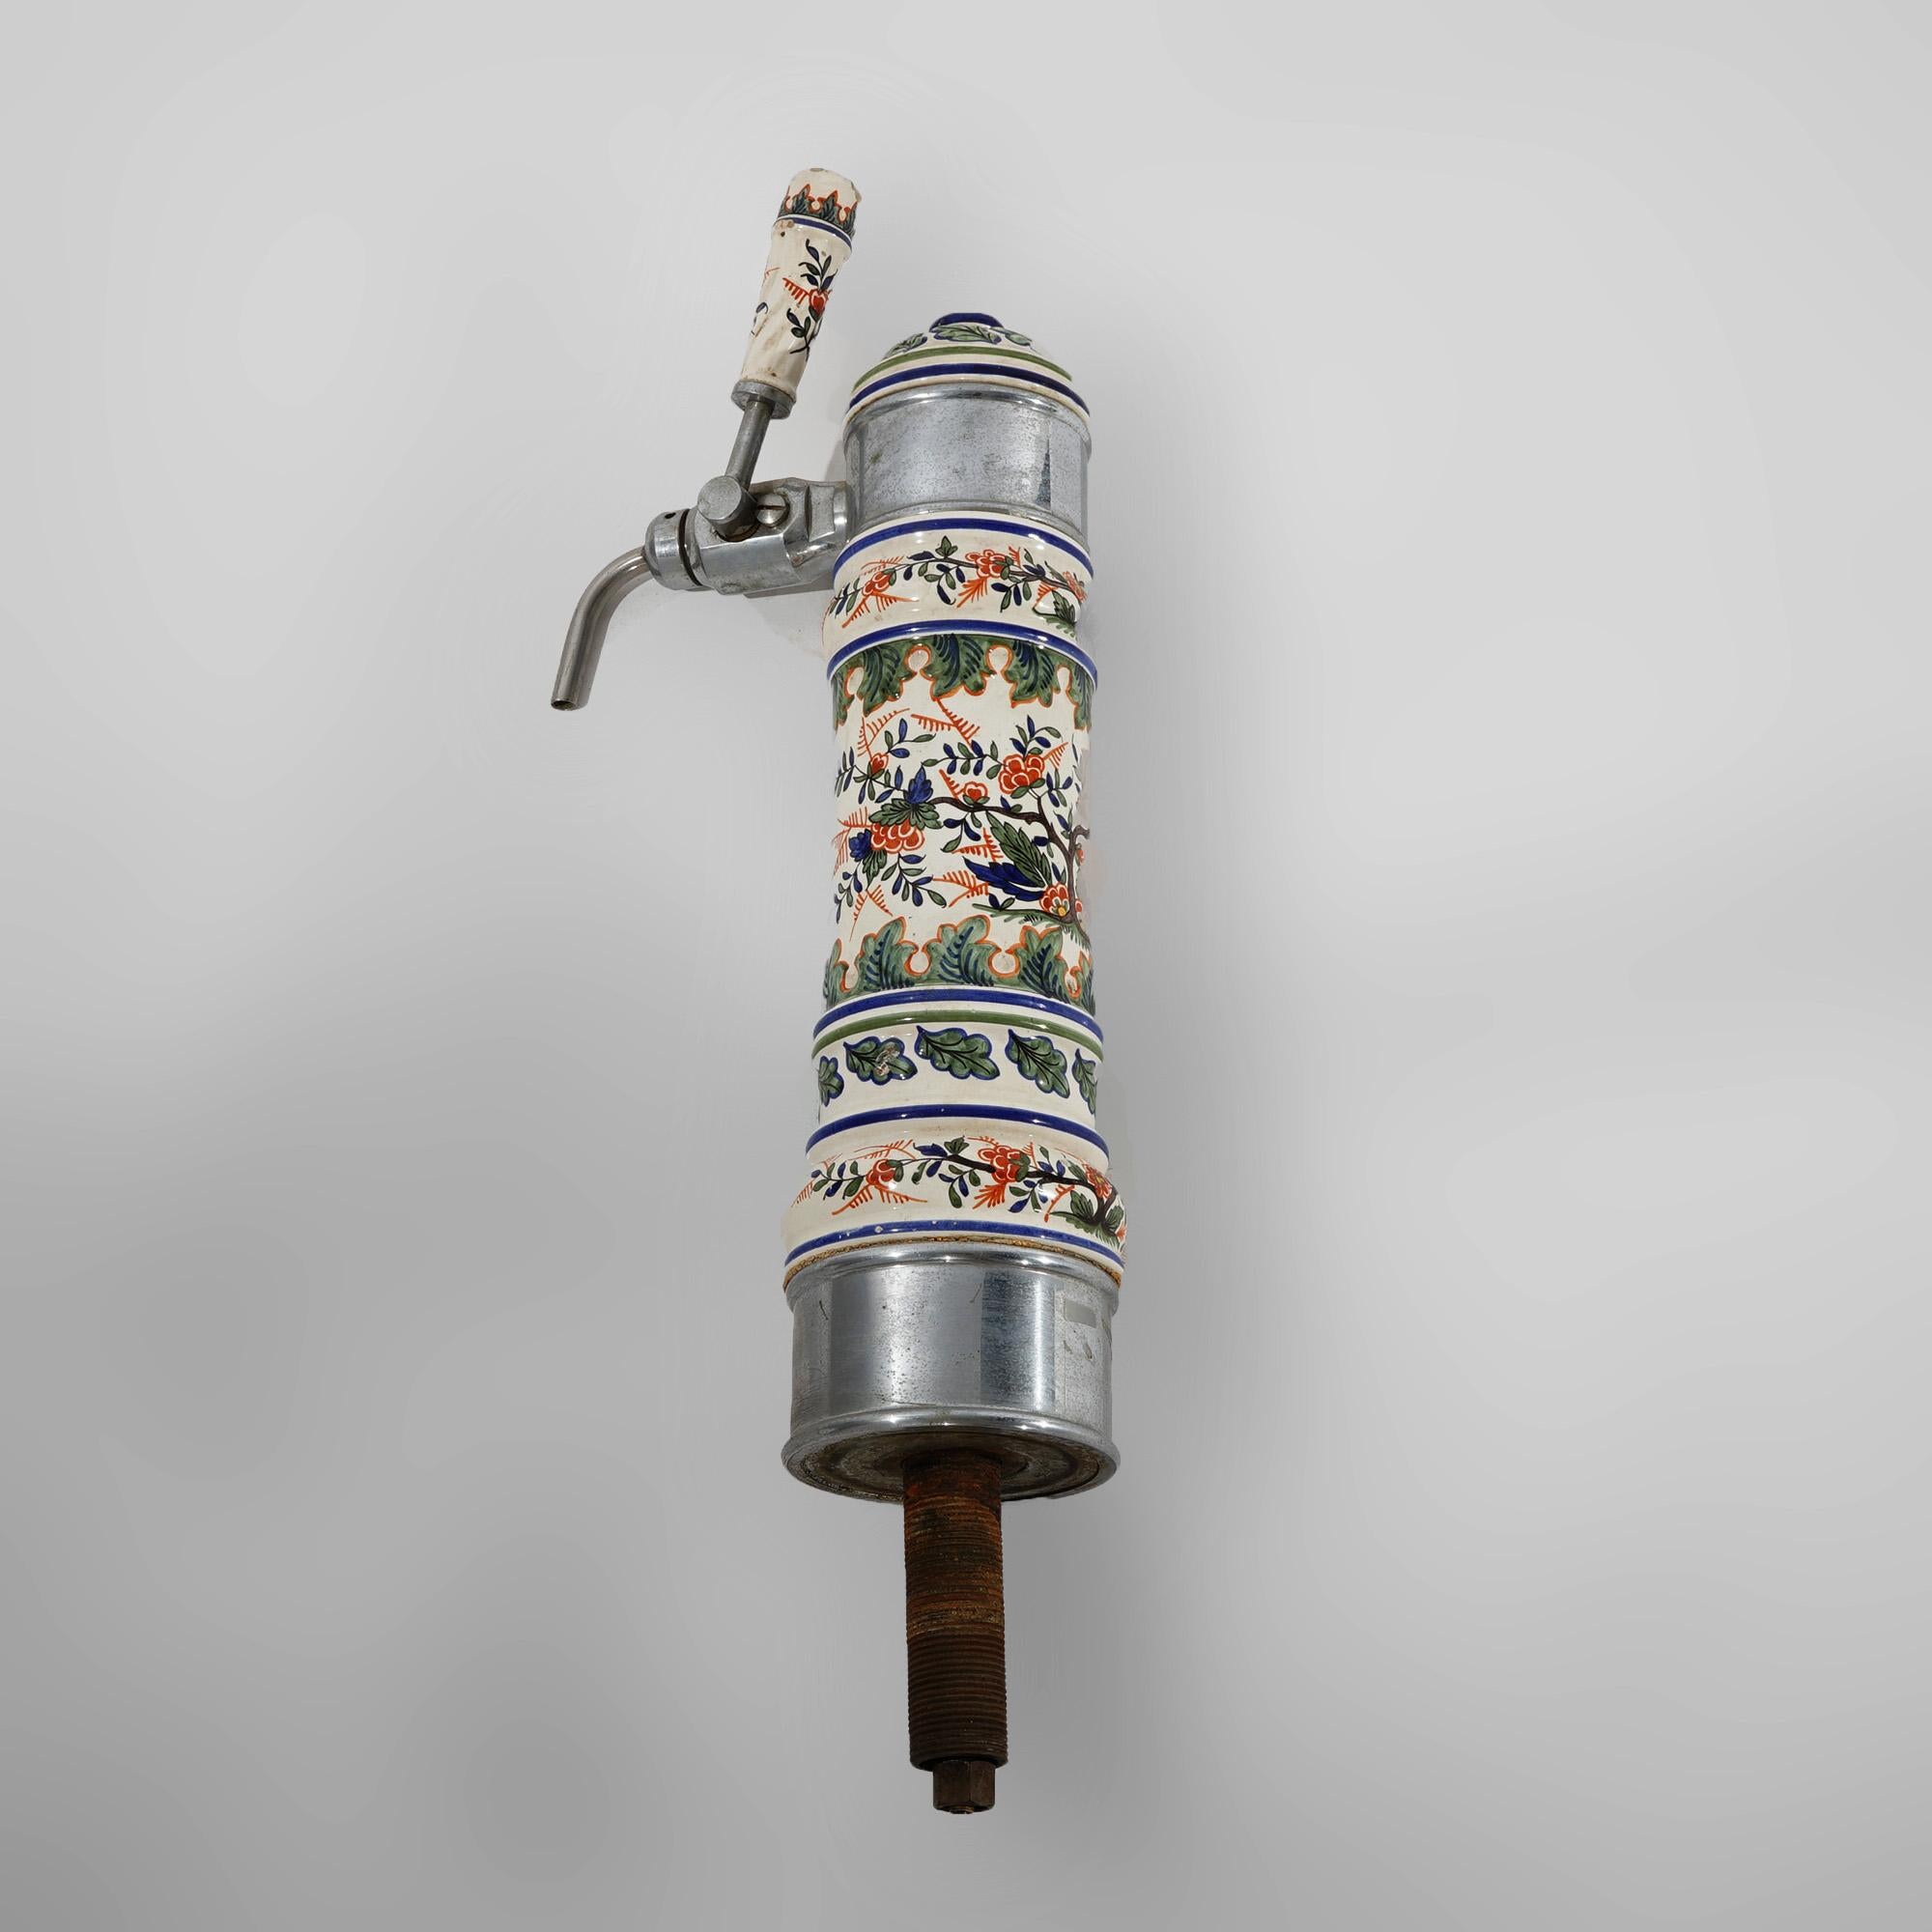 Ancien robinet de bière allemand chromé et polychromé en poterie peinte à la main avec des feuillages et des fleurs C1920

Dimensions : 24''H x 8.5''W x 4.75''D